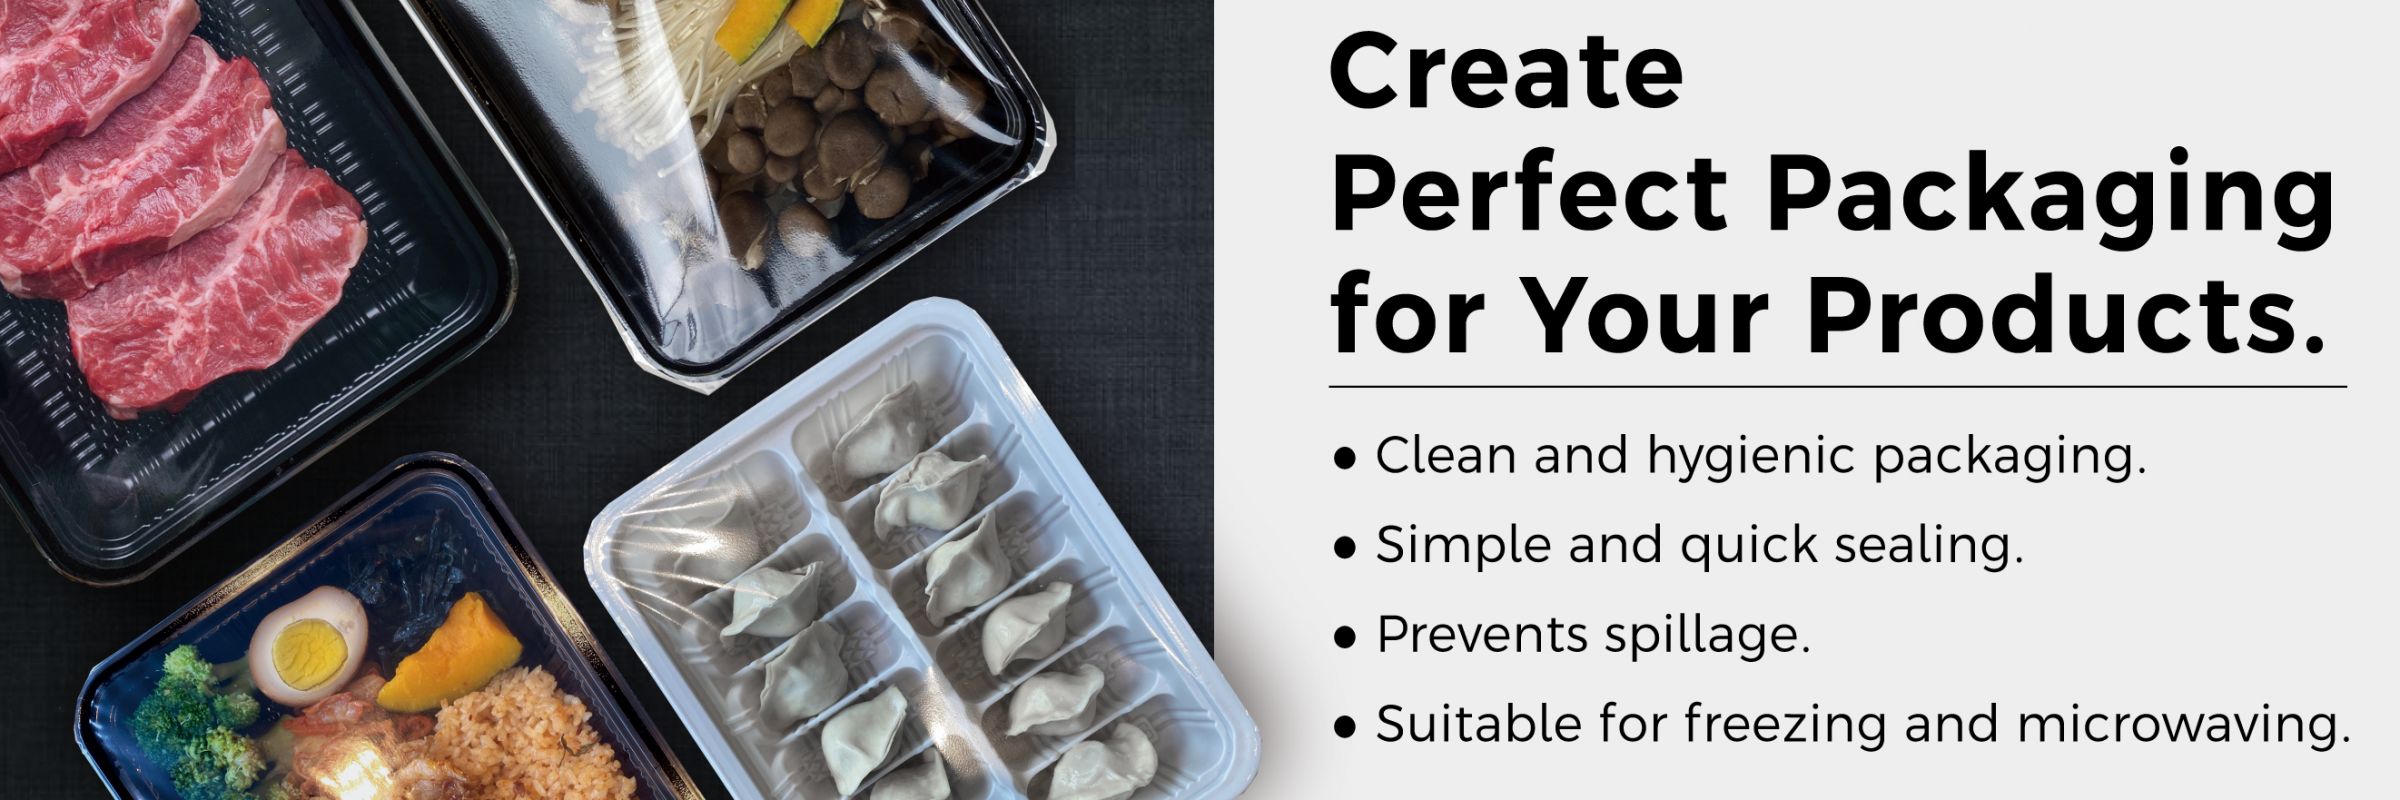 Cree un embalaje perfecto para sus productos.